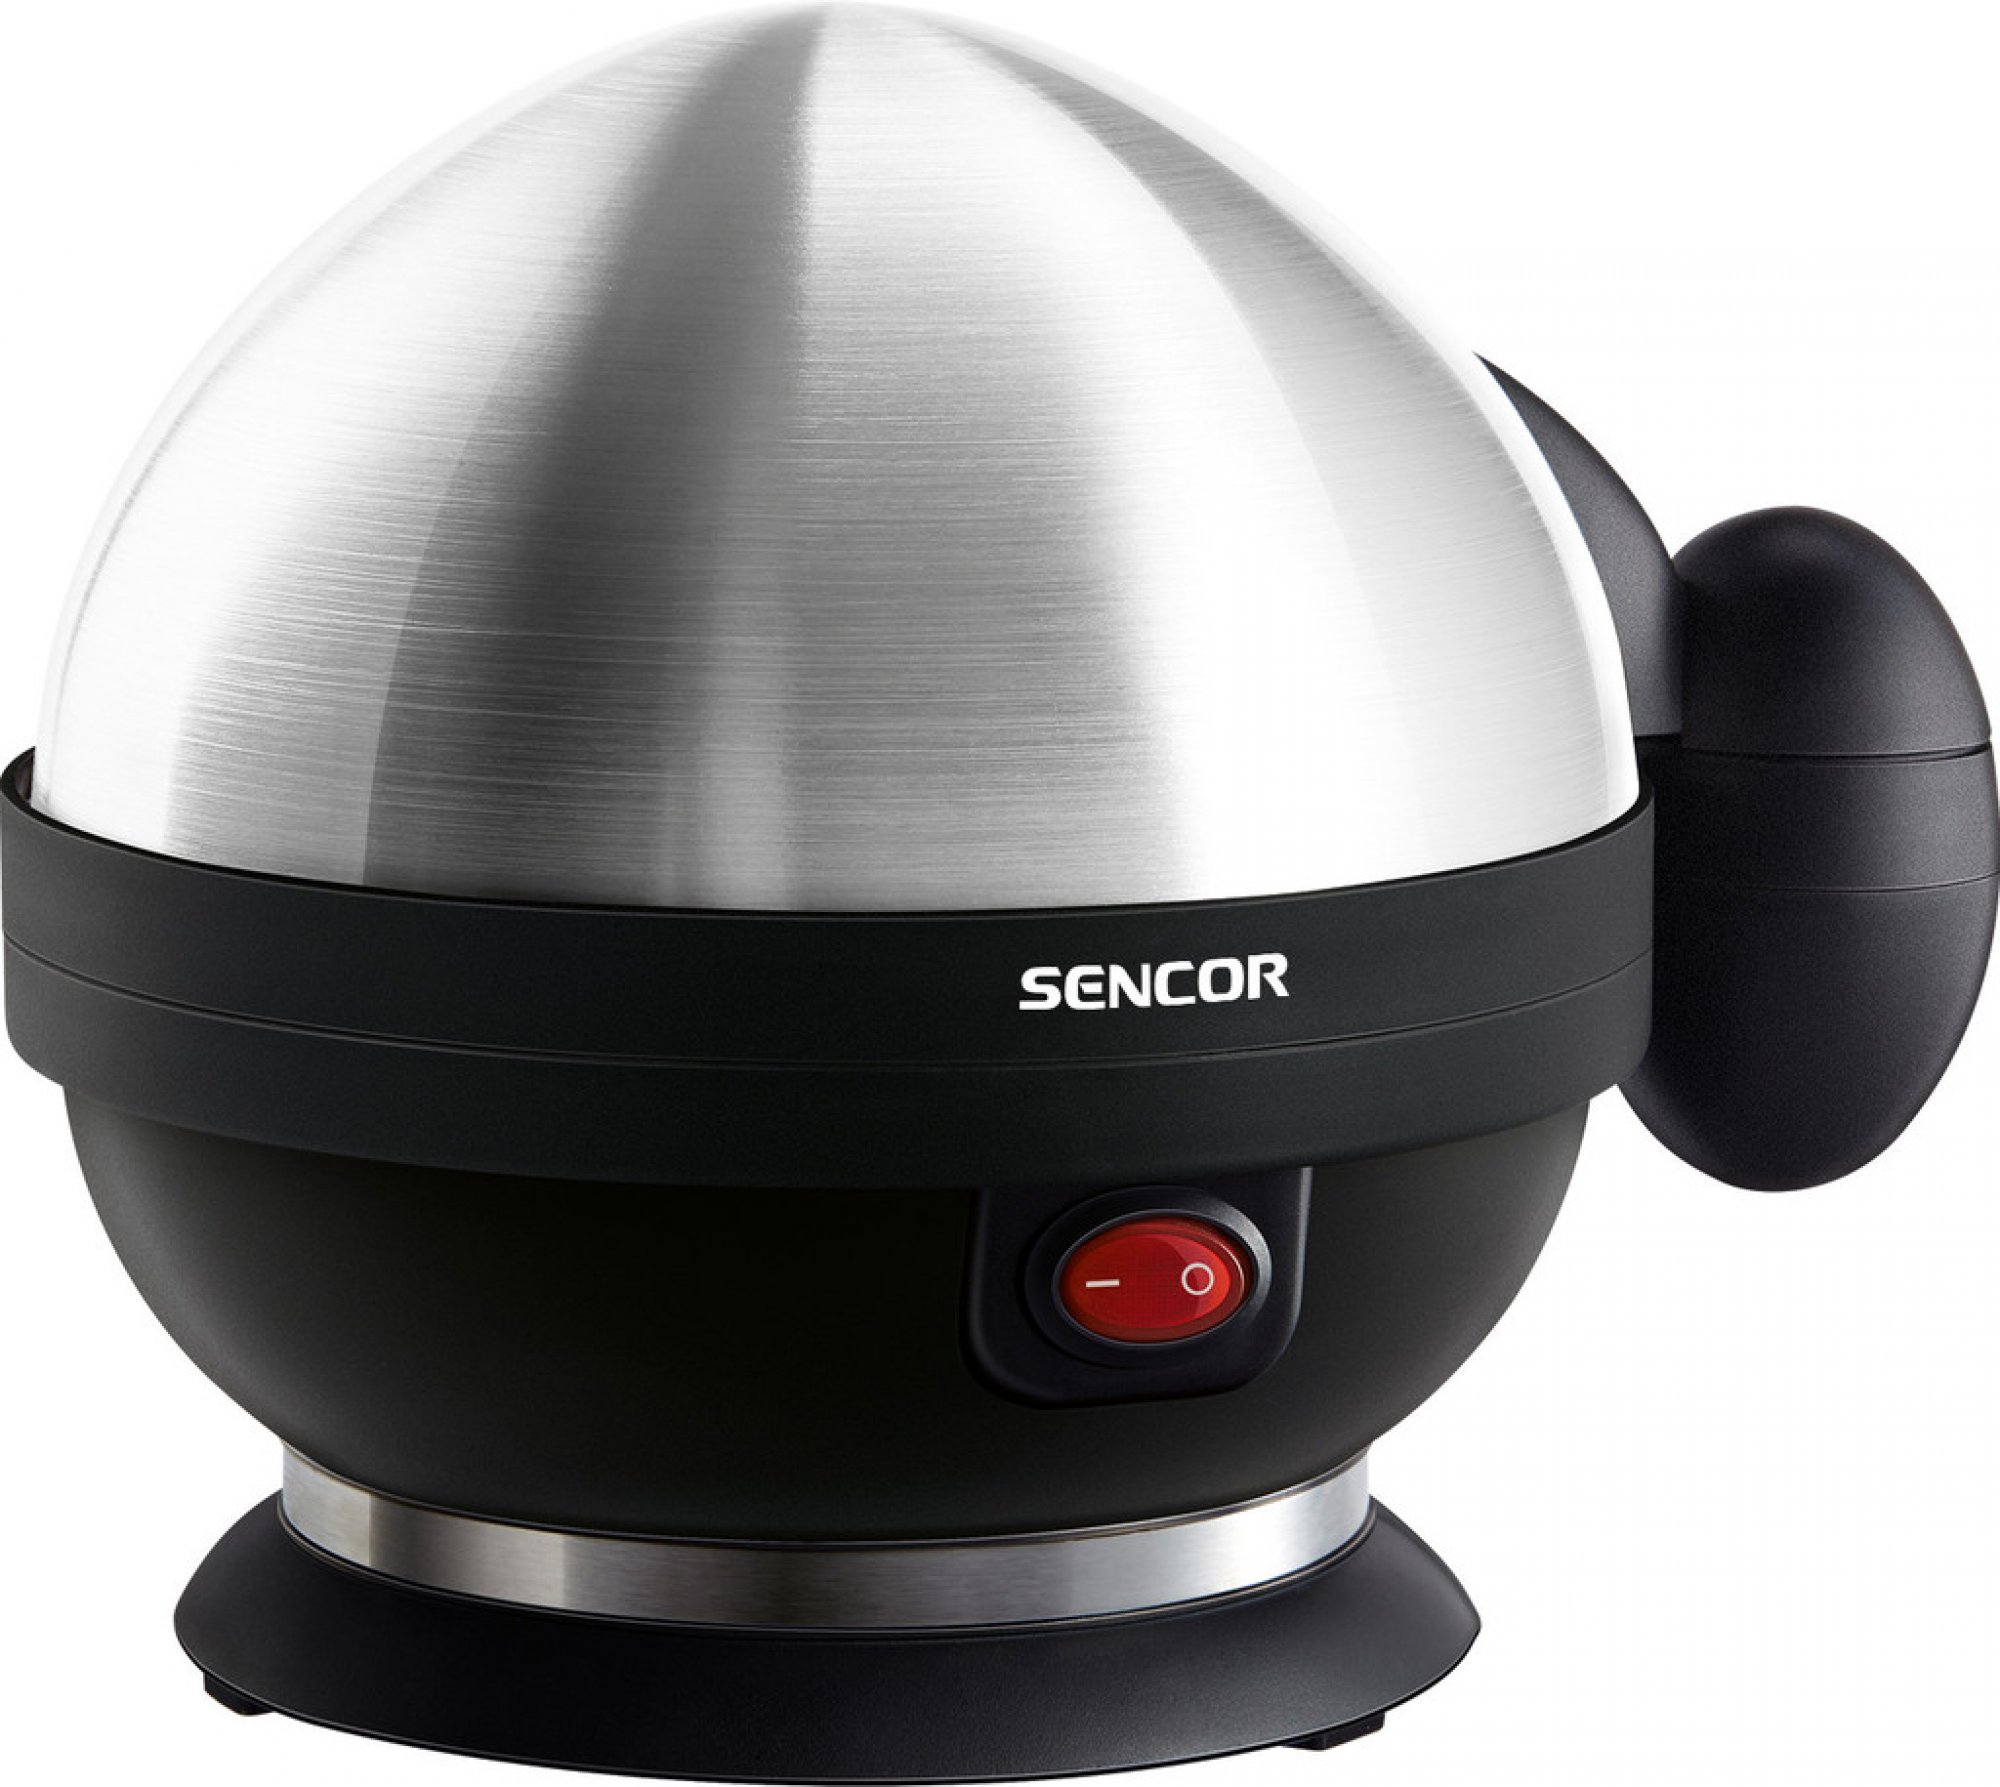 Elektrický vařič vajec značky Sencor.